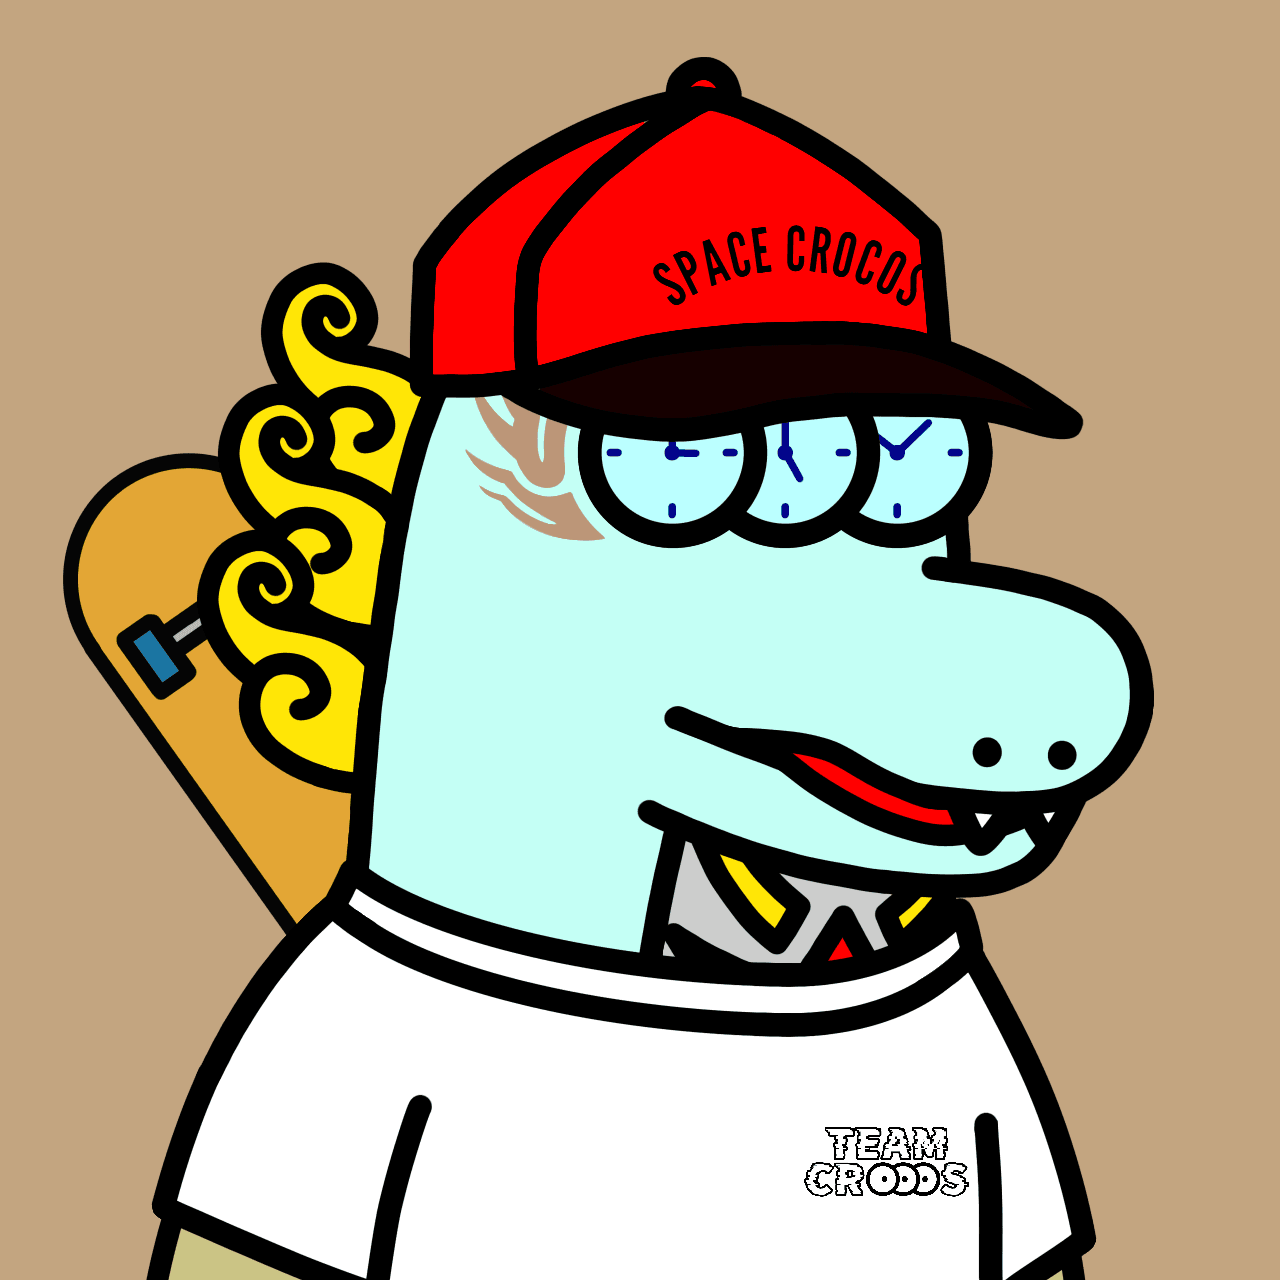 SPACE CROCOS#8826